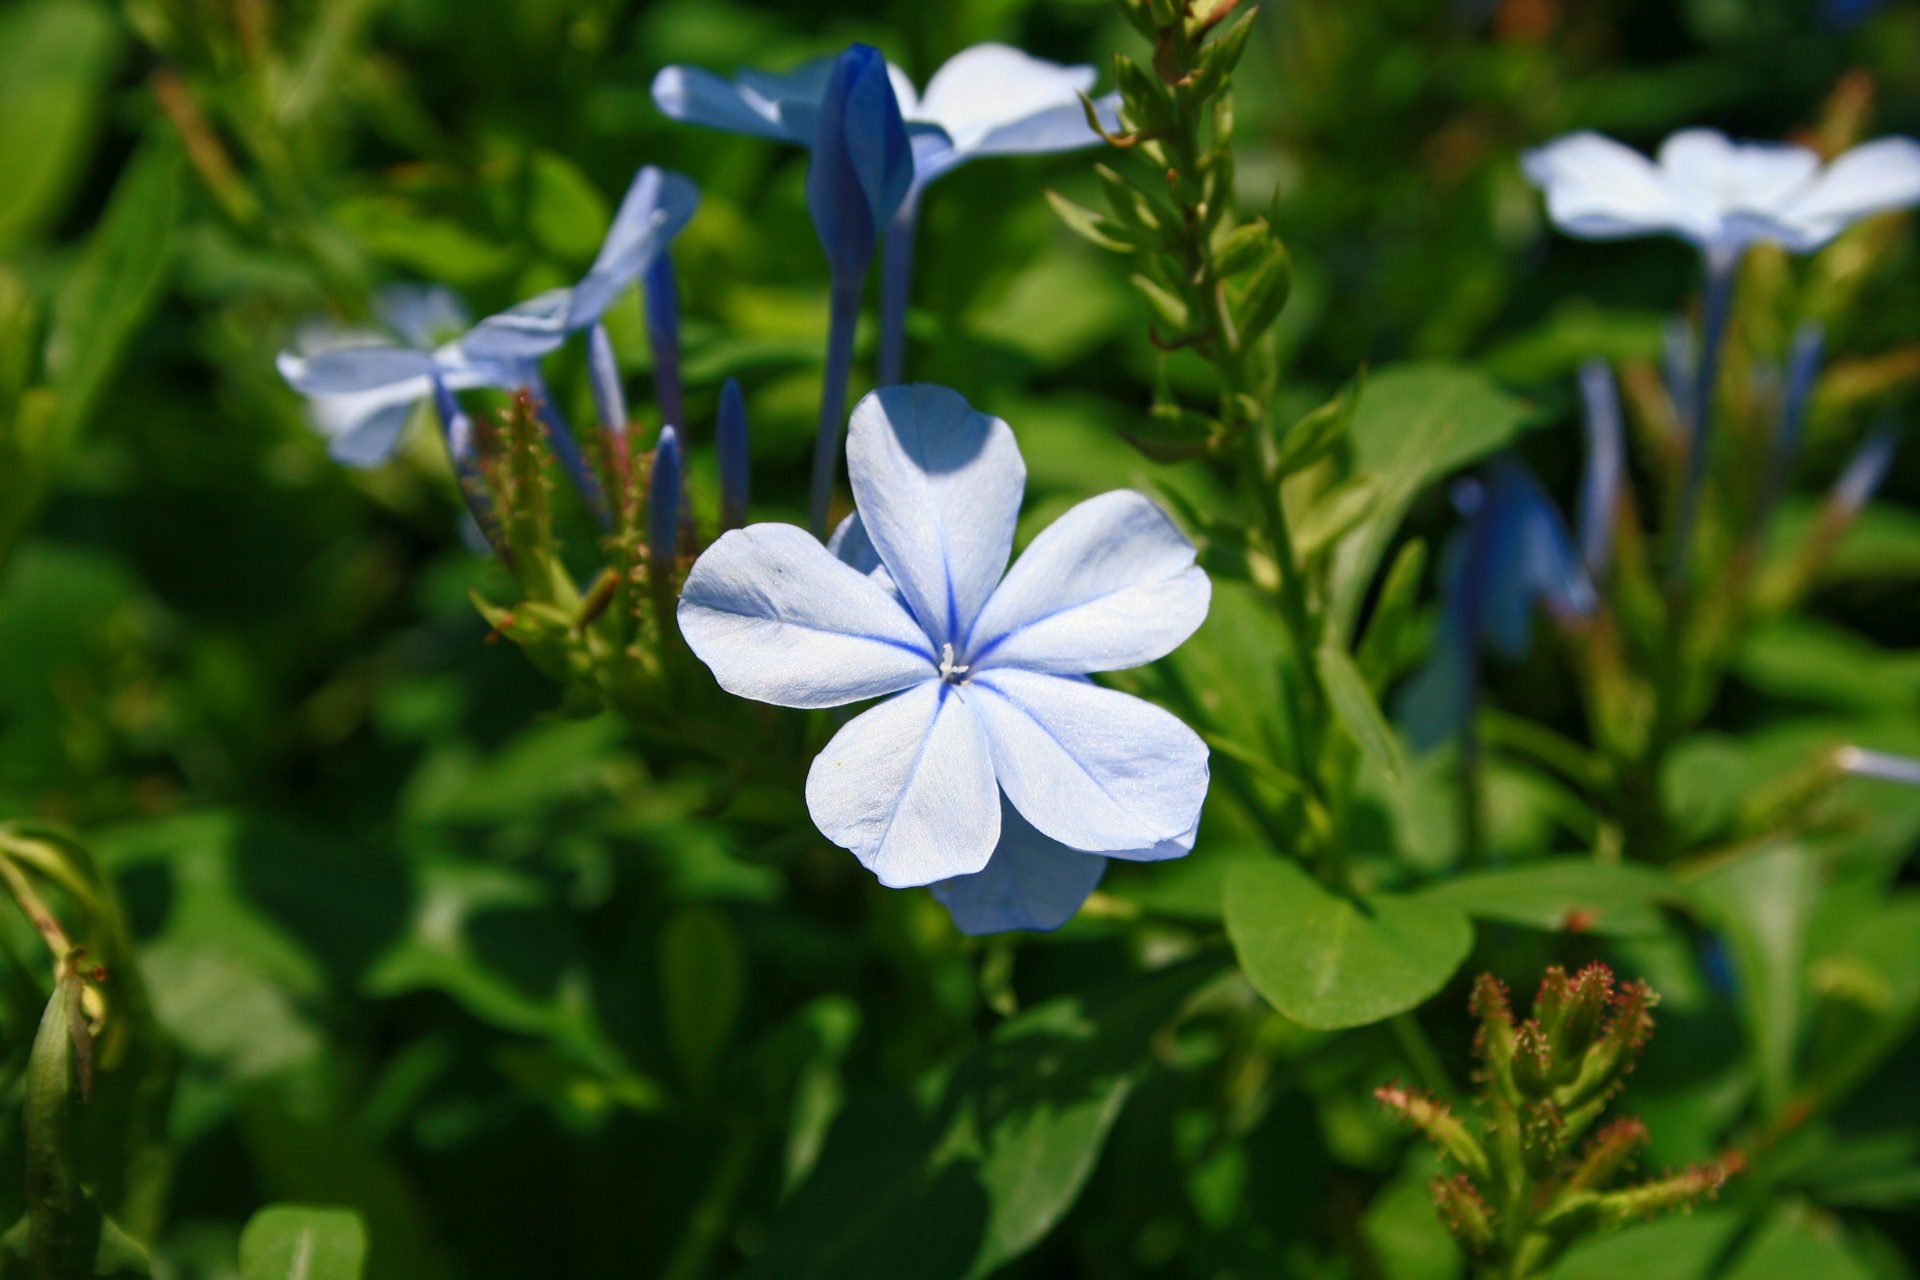 shrub flowers blue free photo